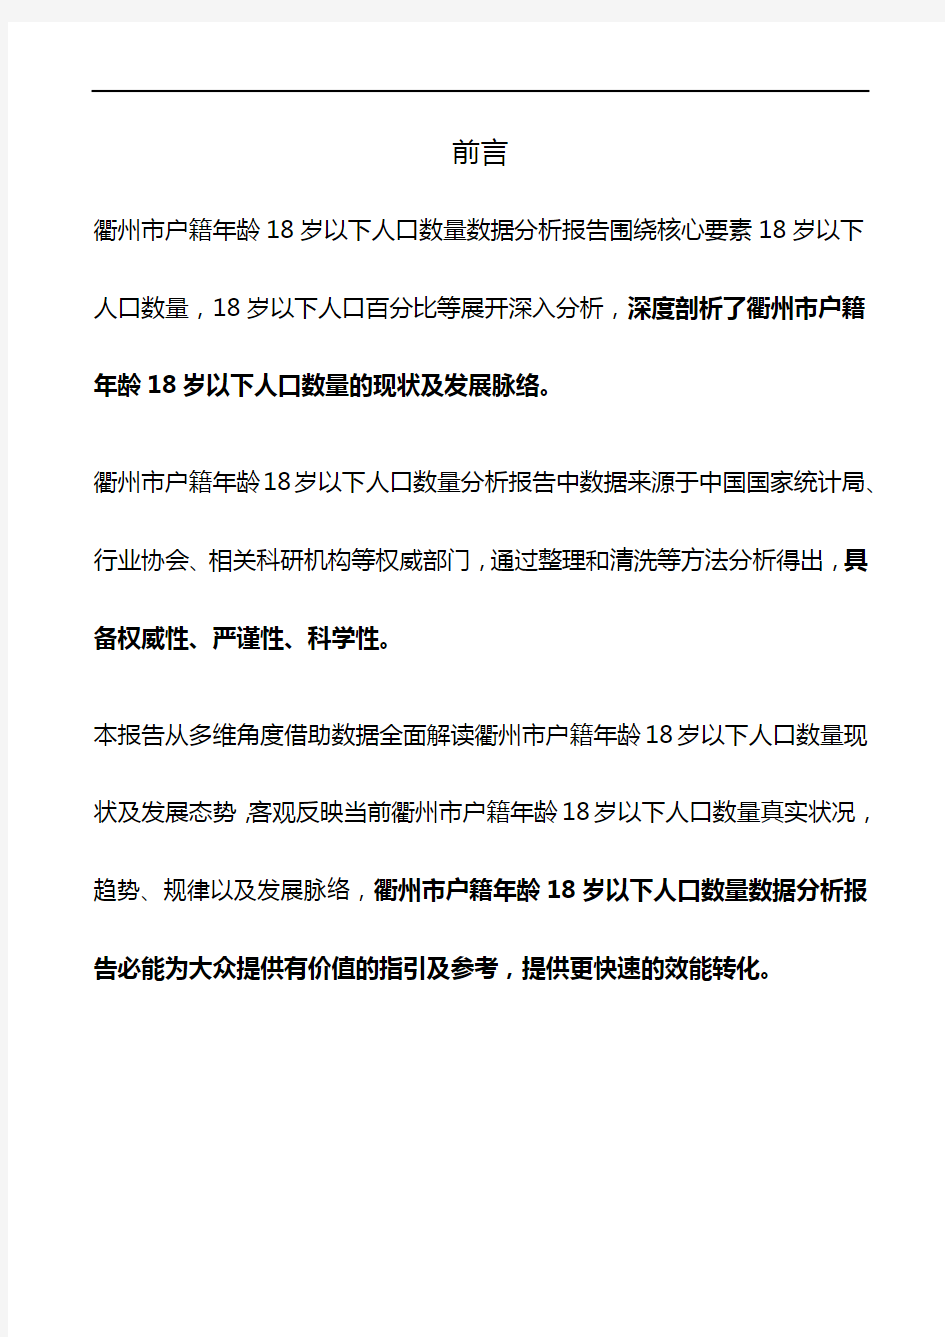 浙江省衢州市户籍年龄18岁以下人口数量数据分析报告2019版